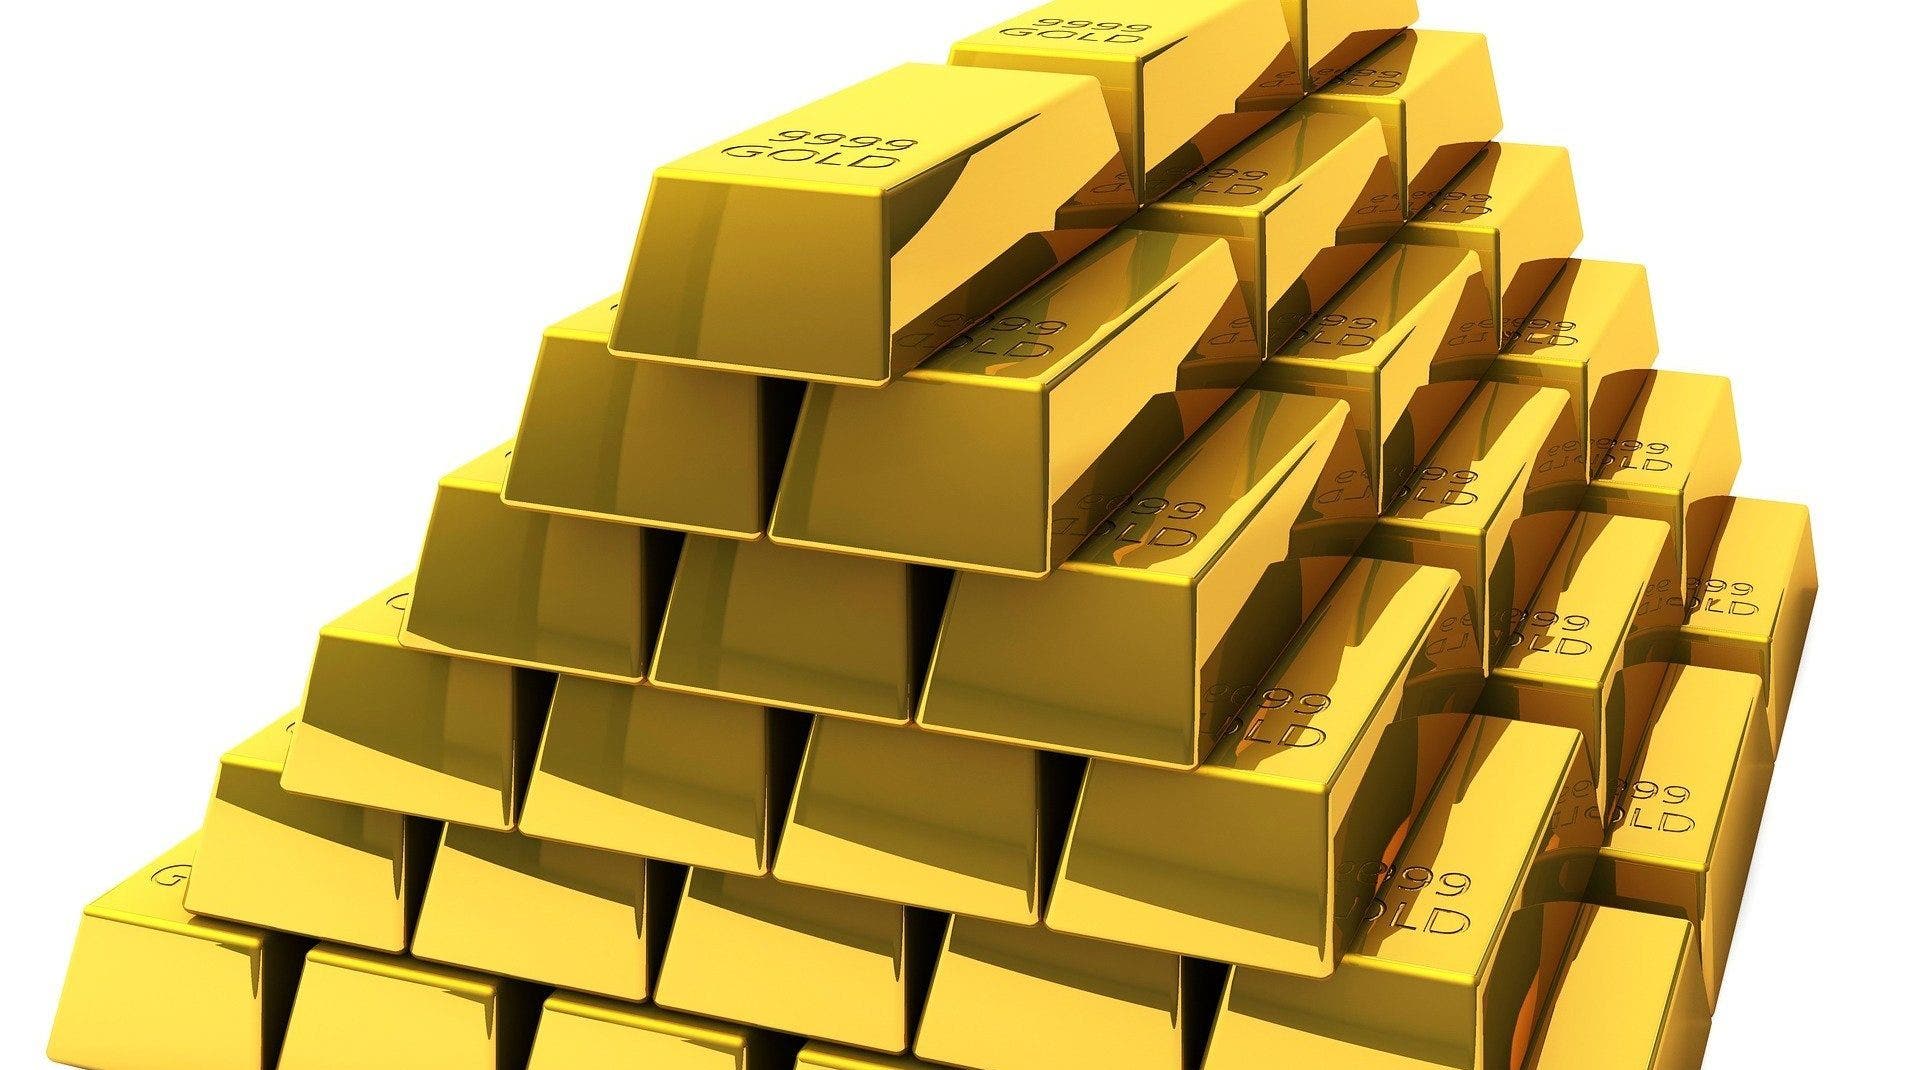 El oro supera el rendimiento de BTC y la bolsa en los últimos 3 meses